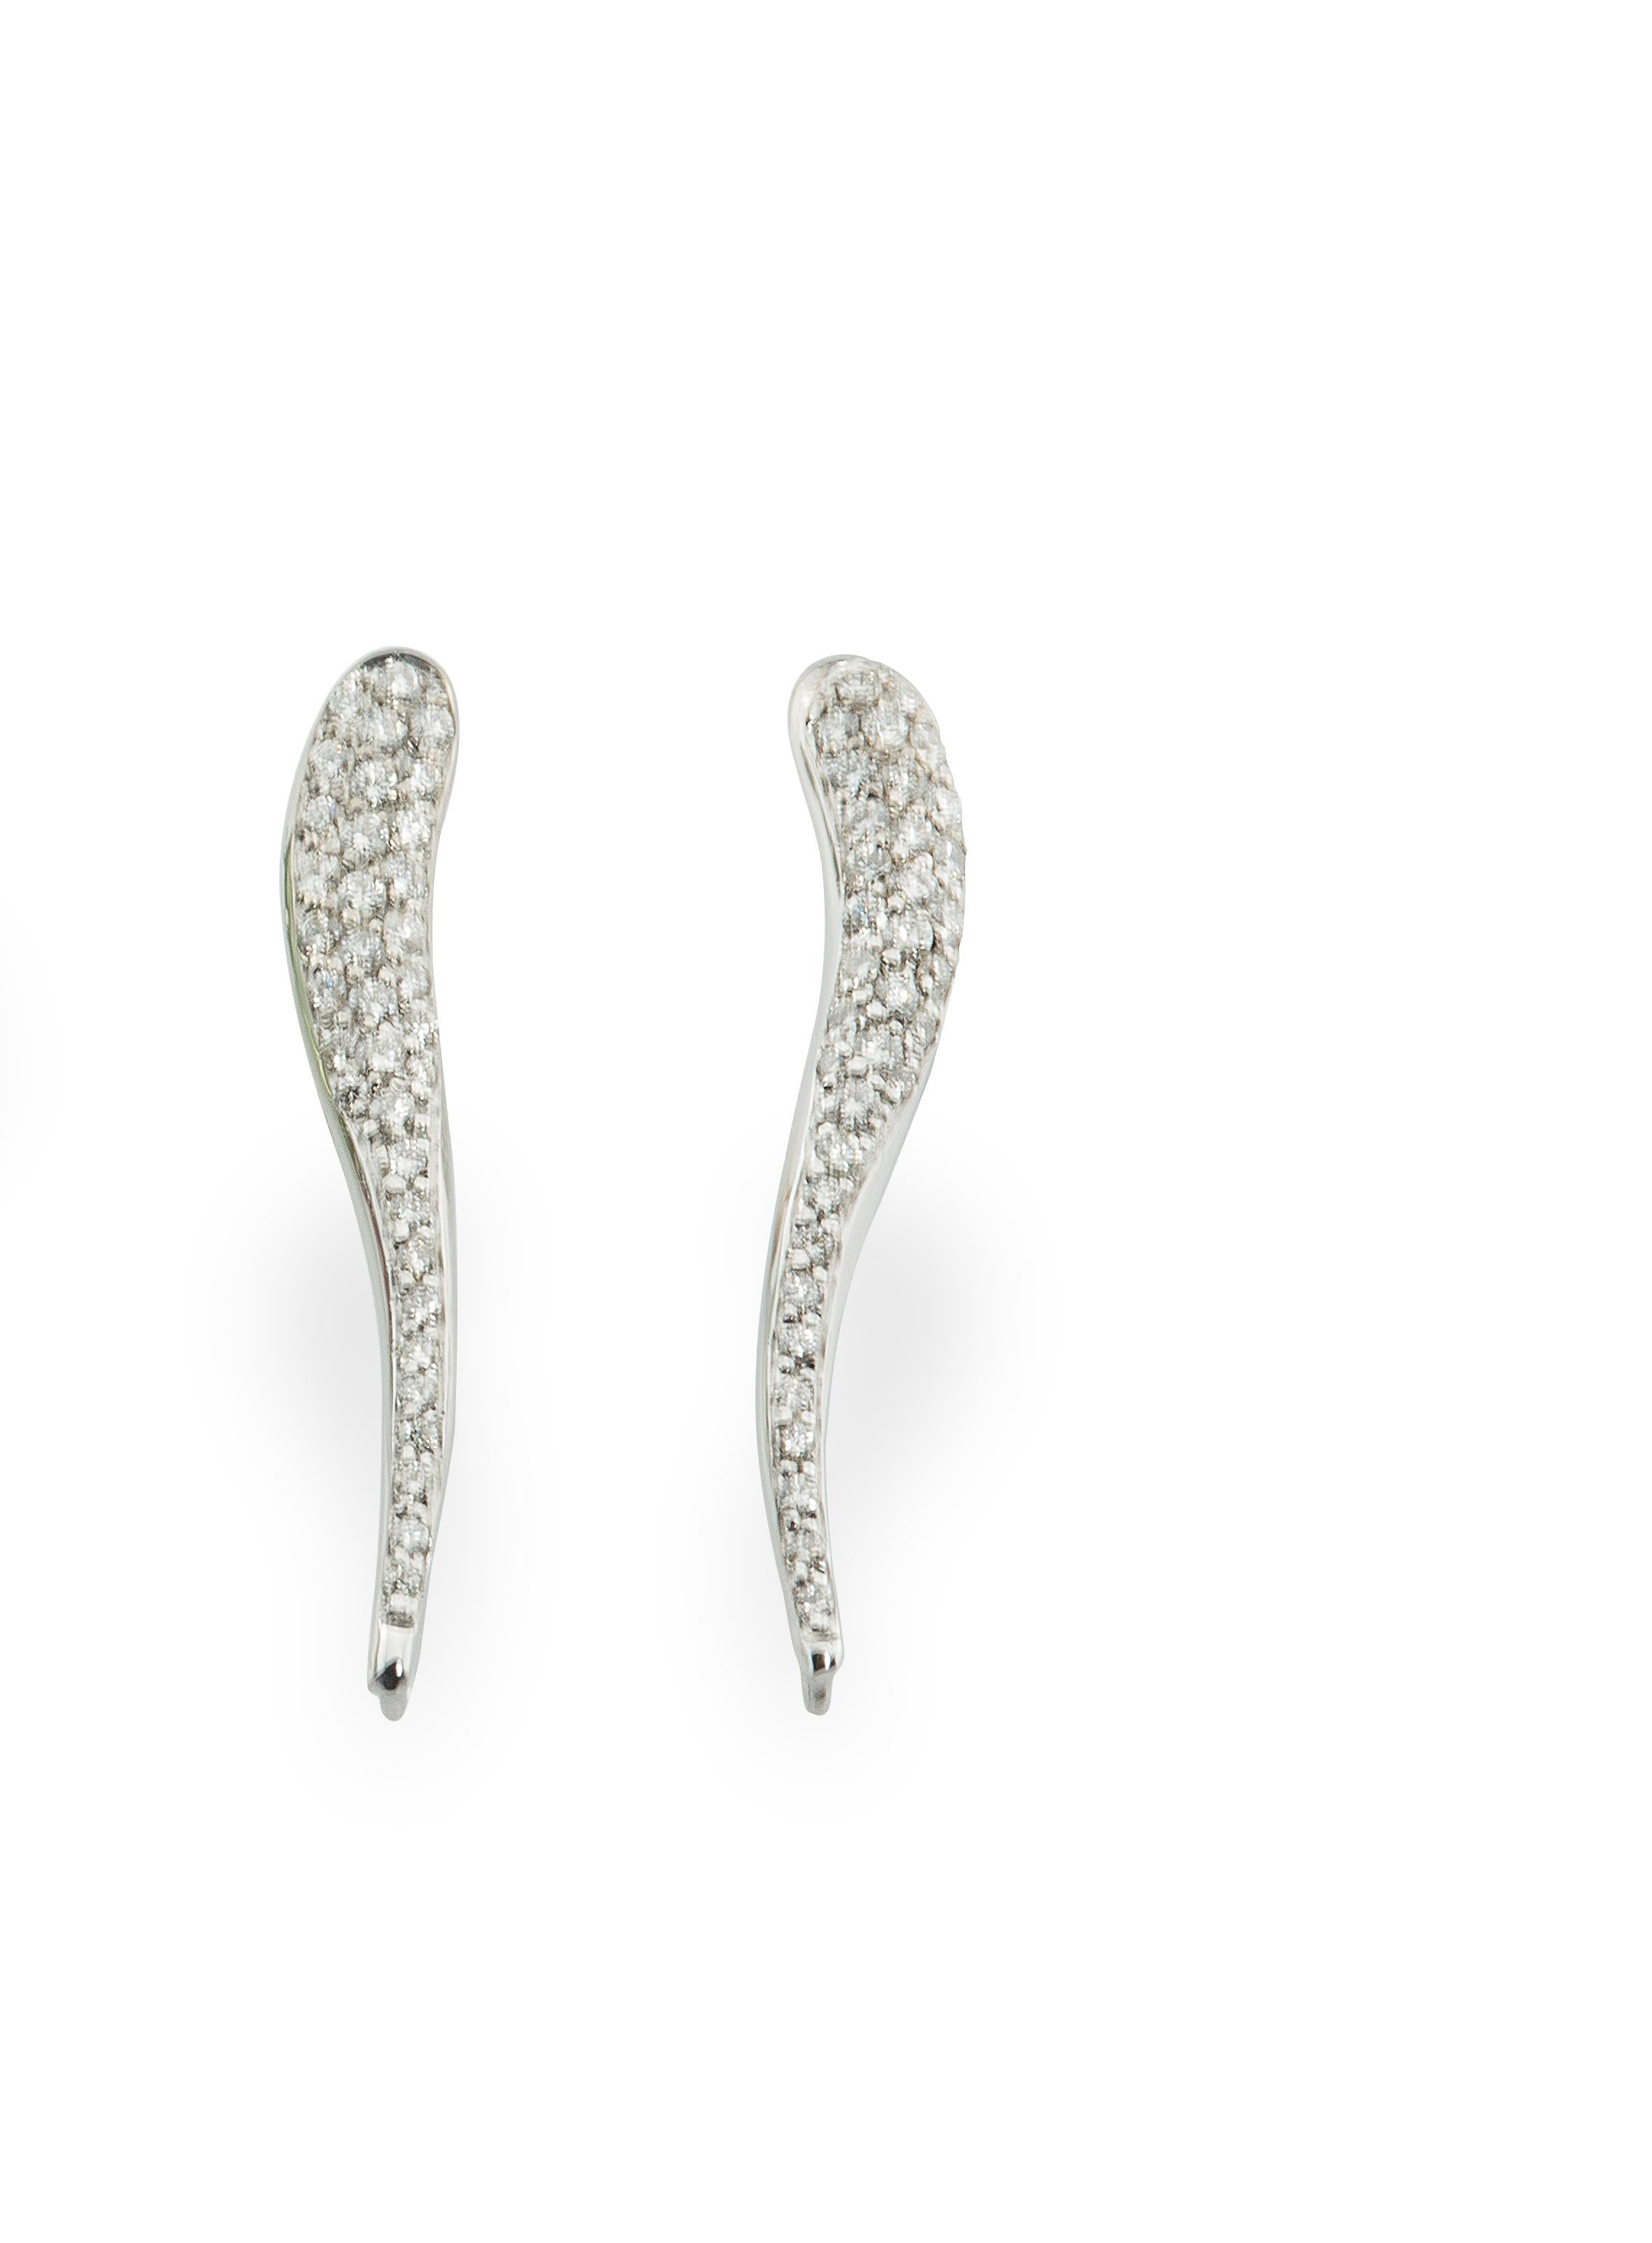 Detachable Rossella Ugolini White Diamonds Green Amethyst Garnet Drops Earrings For Sale 1